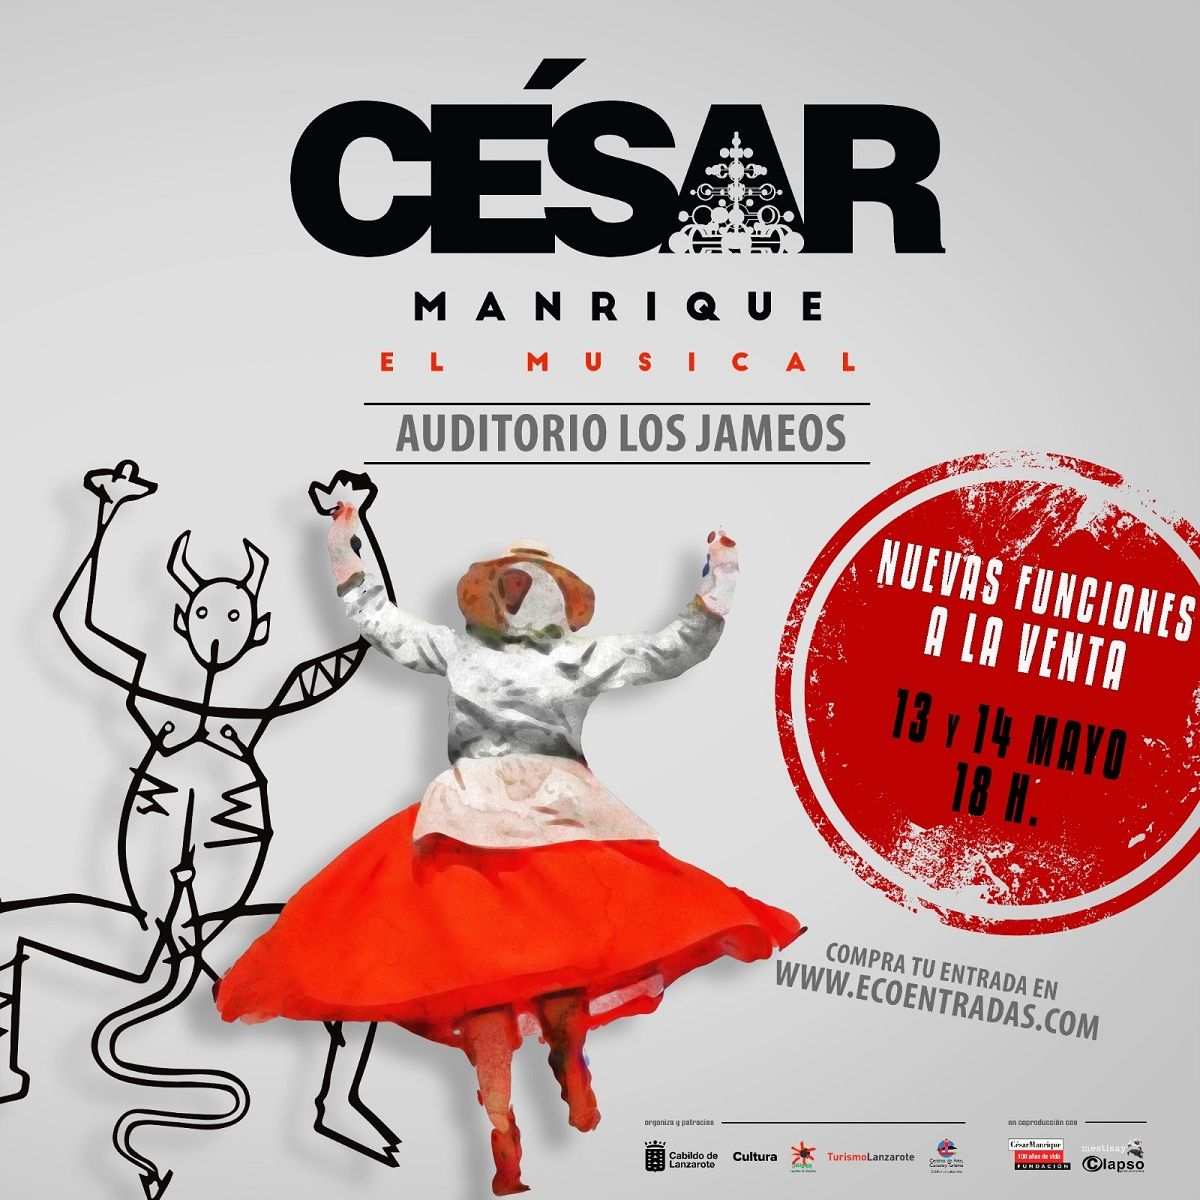 El musical César Manrique amplía con dos funciones más su estreno 